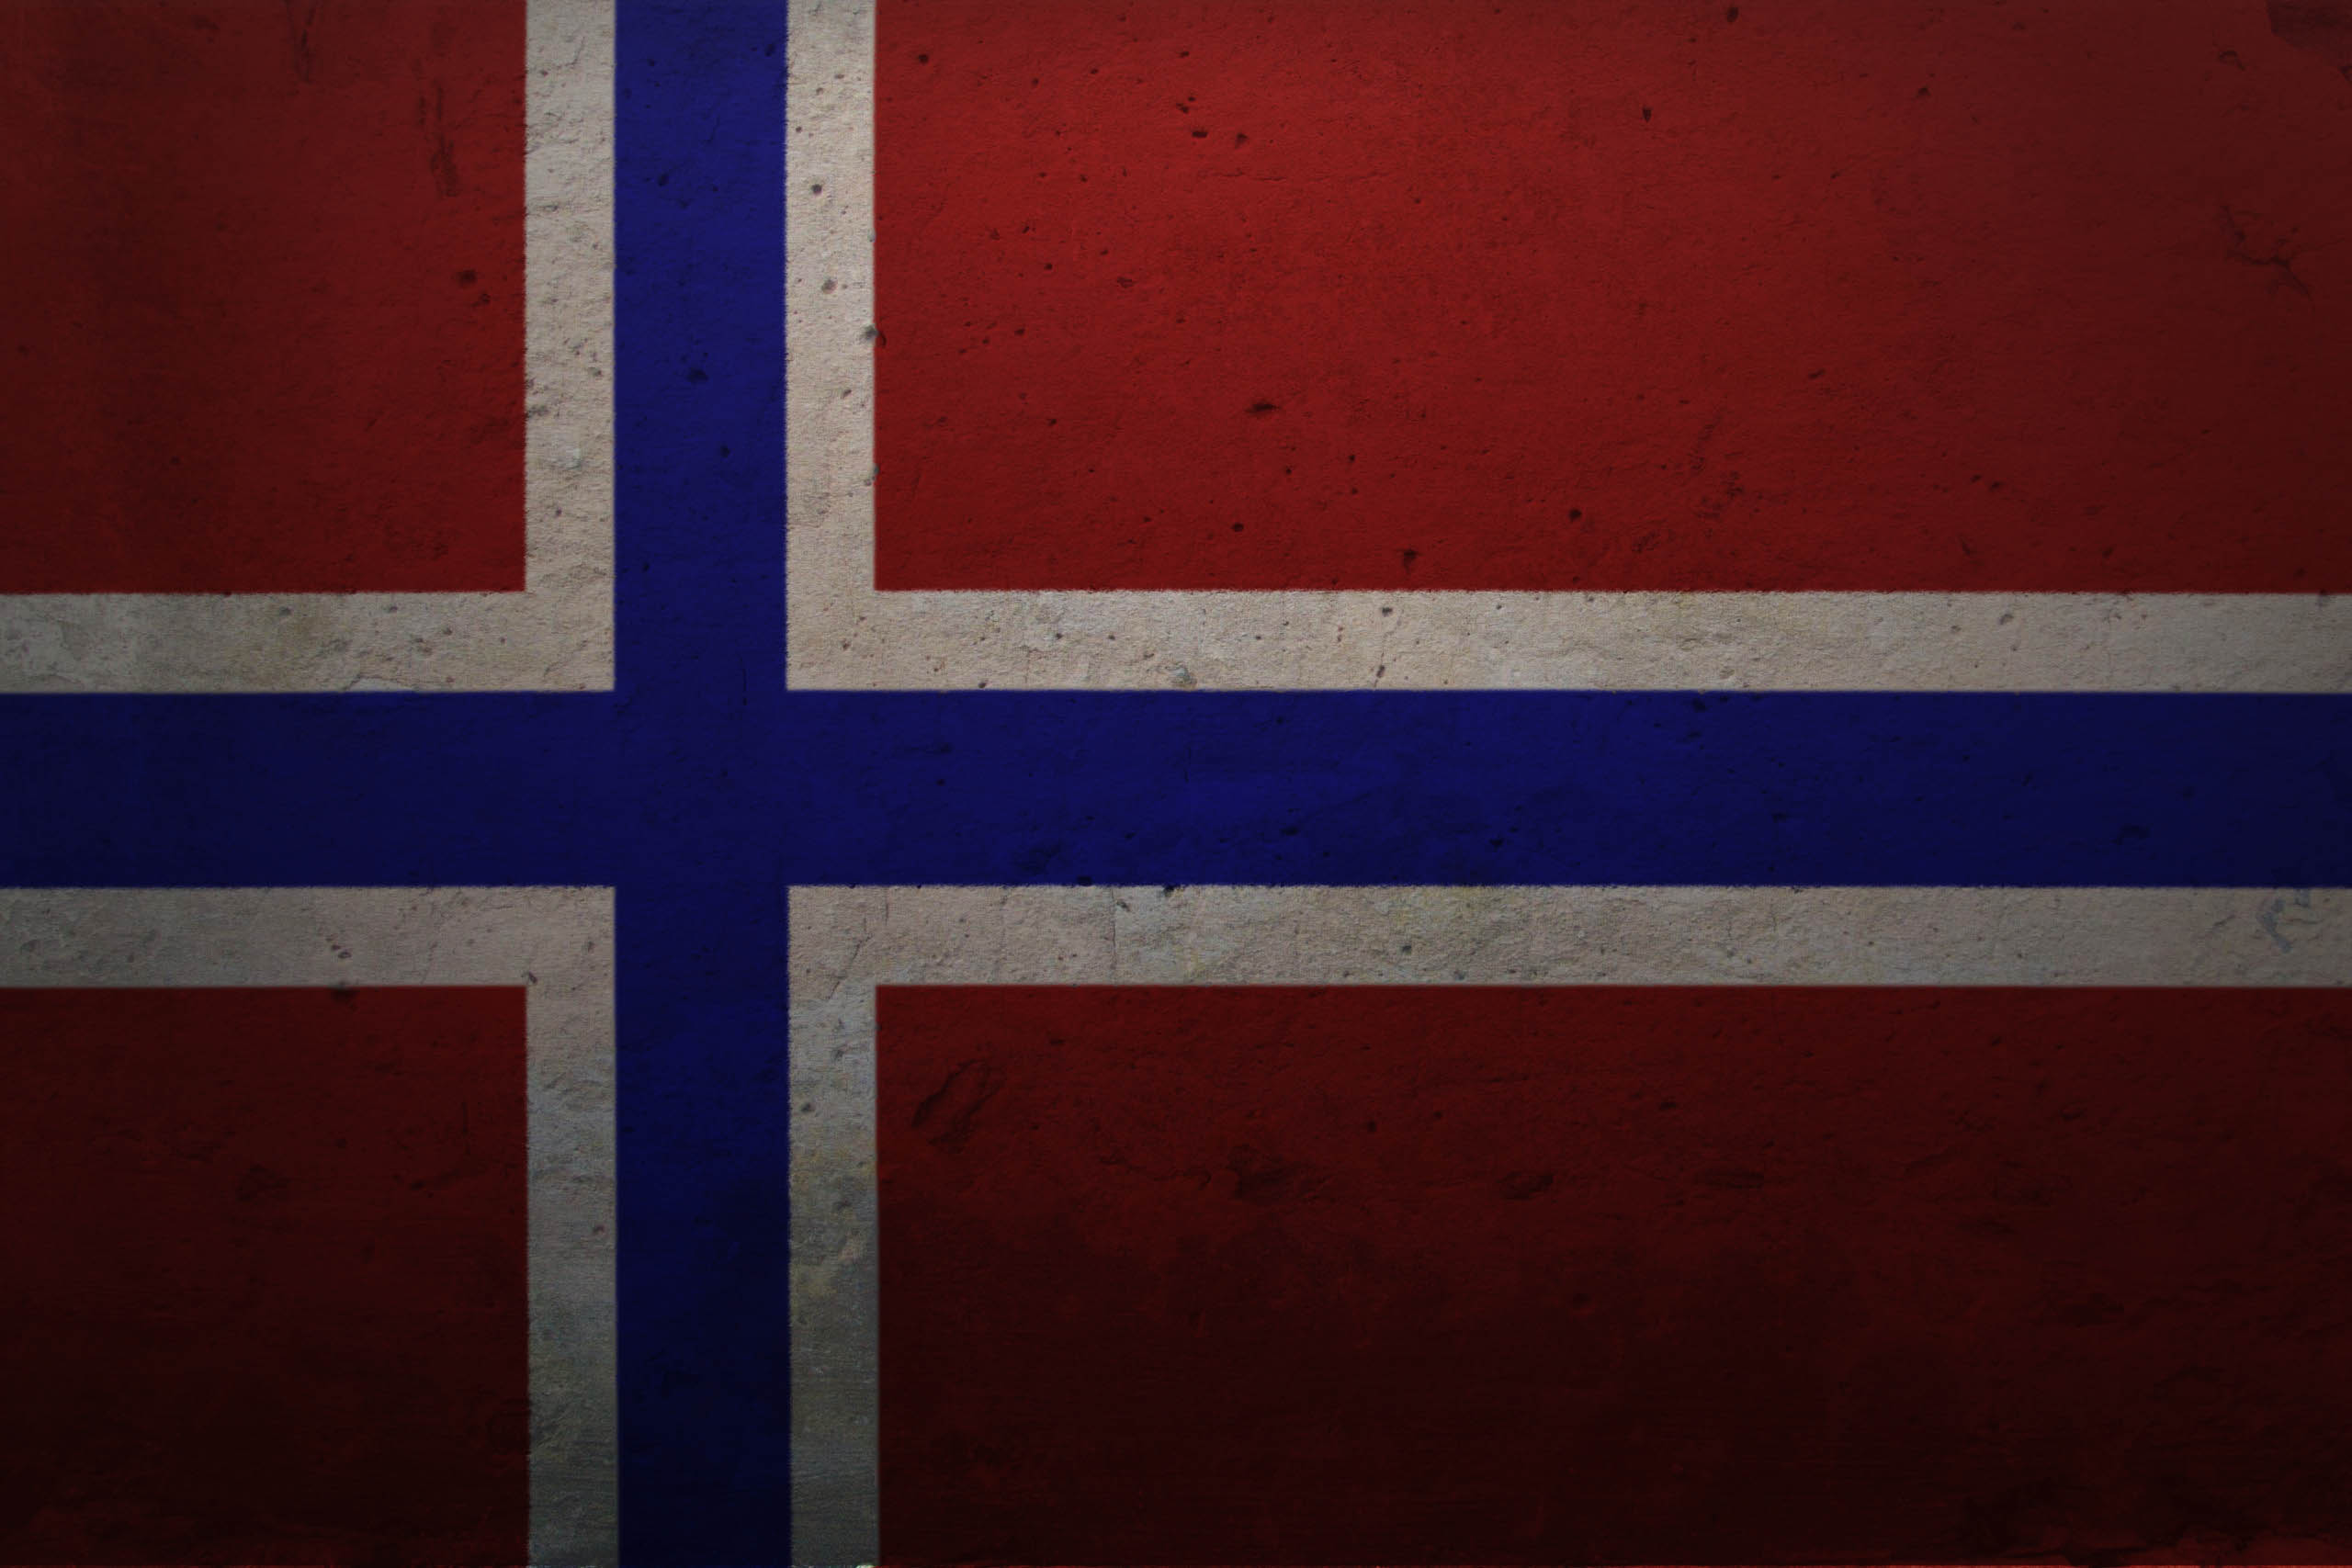 Norwegian, Norway, flags, norsk - desktop wallpaper